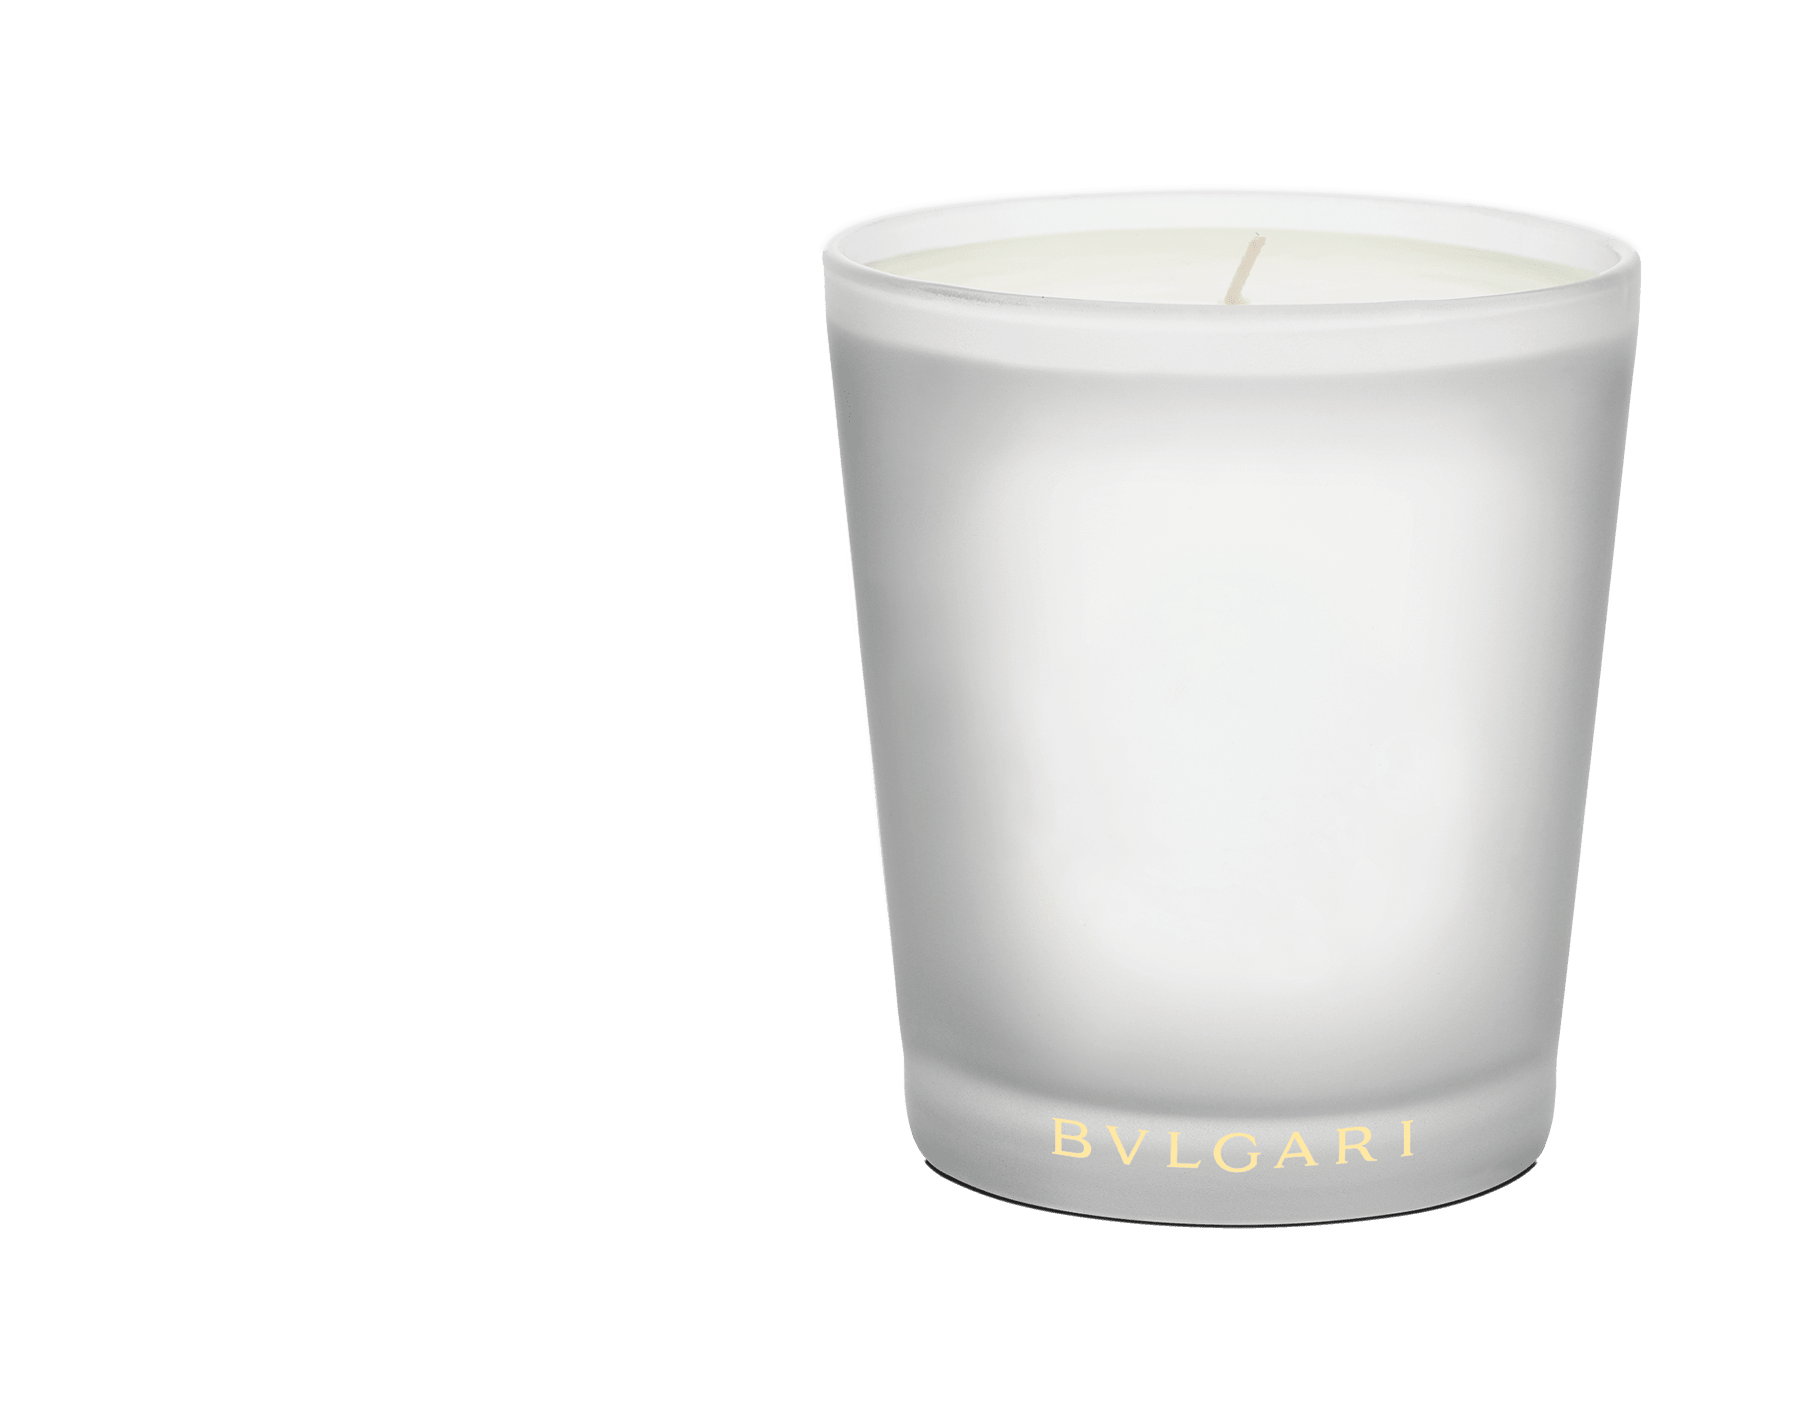 bvlgari white tea candle